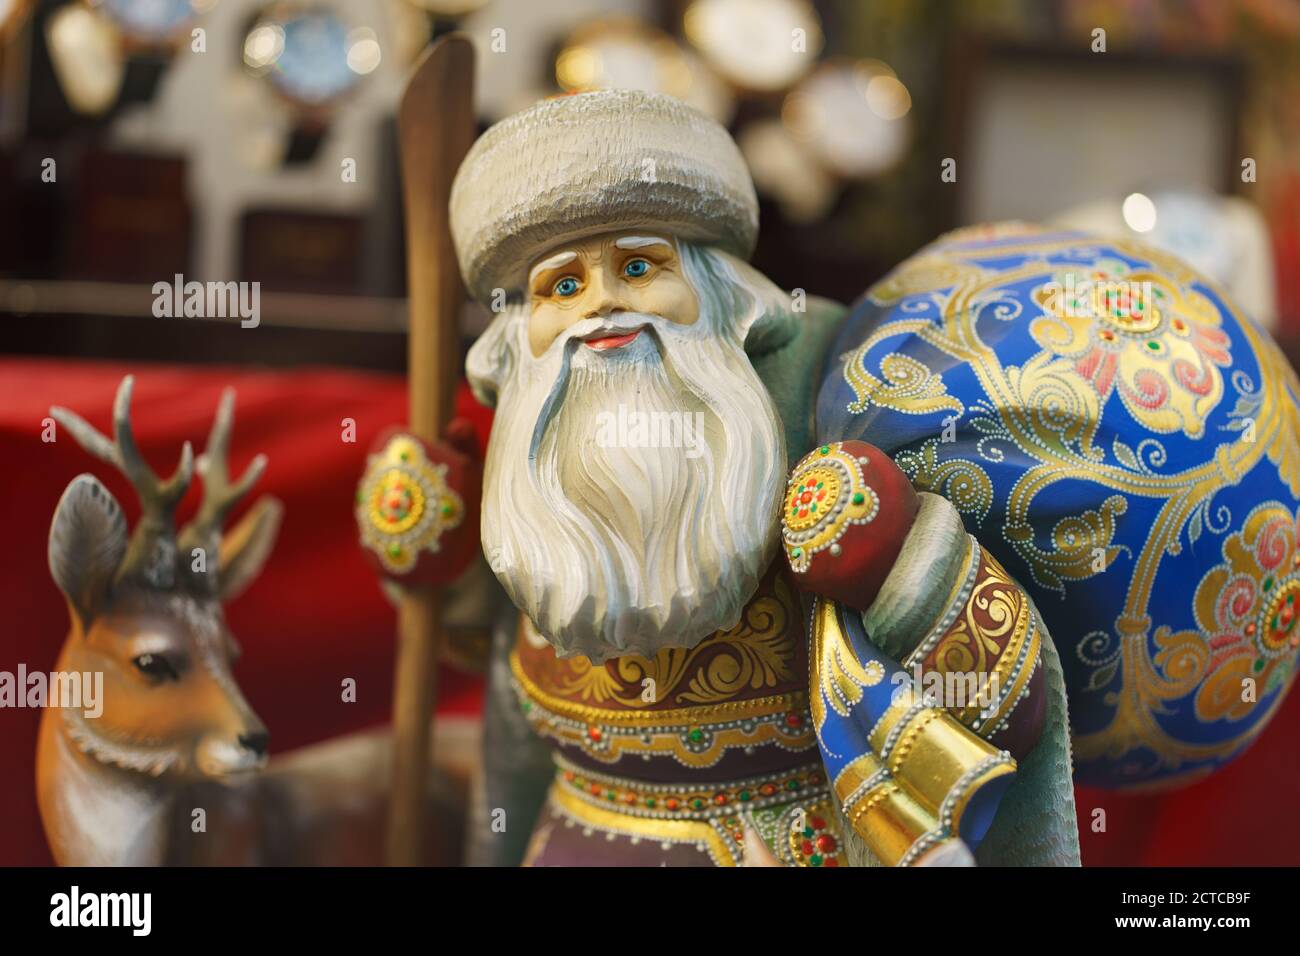 Decorazione domestica a Capodanno e vacanze di Natale. Fotografia di Moroz russo / Babbo Natale Foto Stock